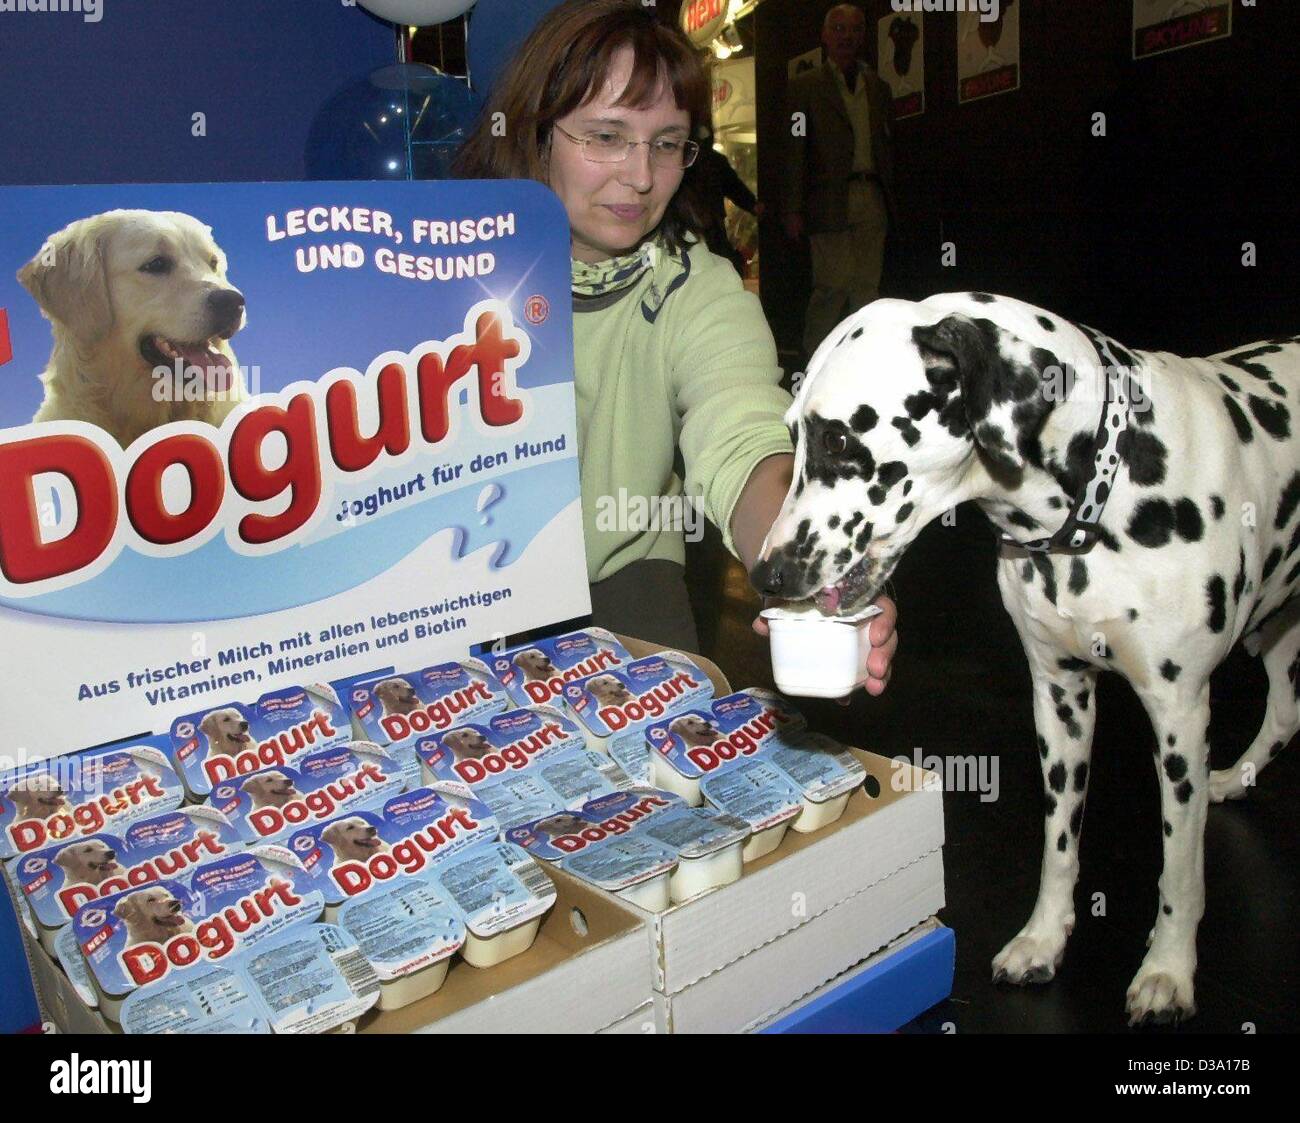 Dpa) - Warum werden Haustiere vermissen was ihre Besitzer genießen? Susanne  Wagner füttert ihr Dalmatiner mit "Dogurt", das ist Joghurt für Hunde auf  dem Haustier Messe "Interzoo" in Nürnberg, 10. Mai 2002 Stockfotografie -  Alamy